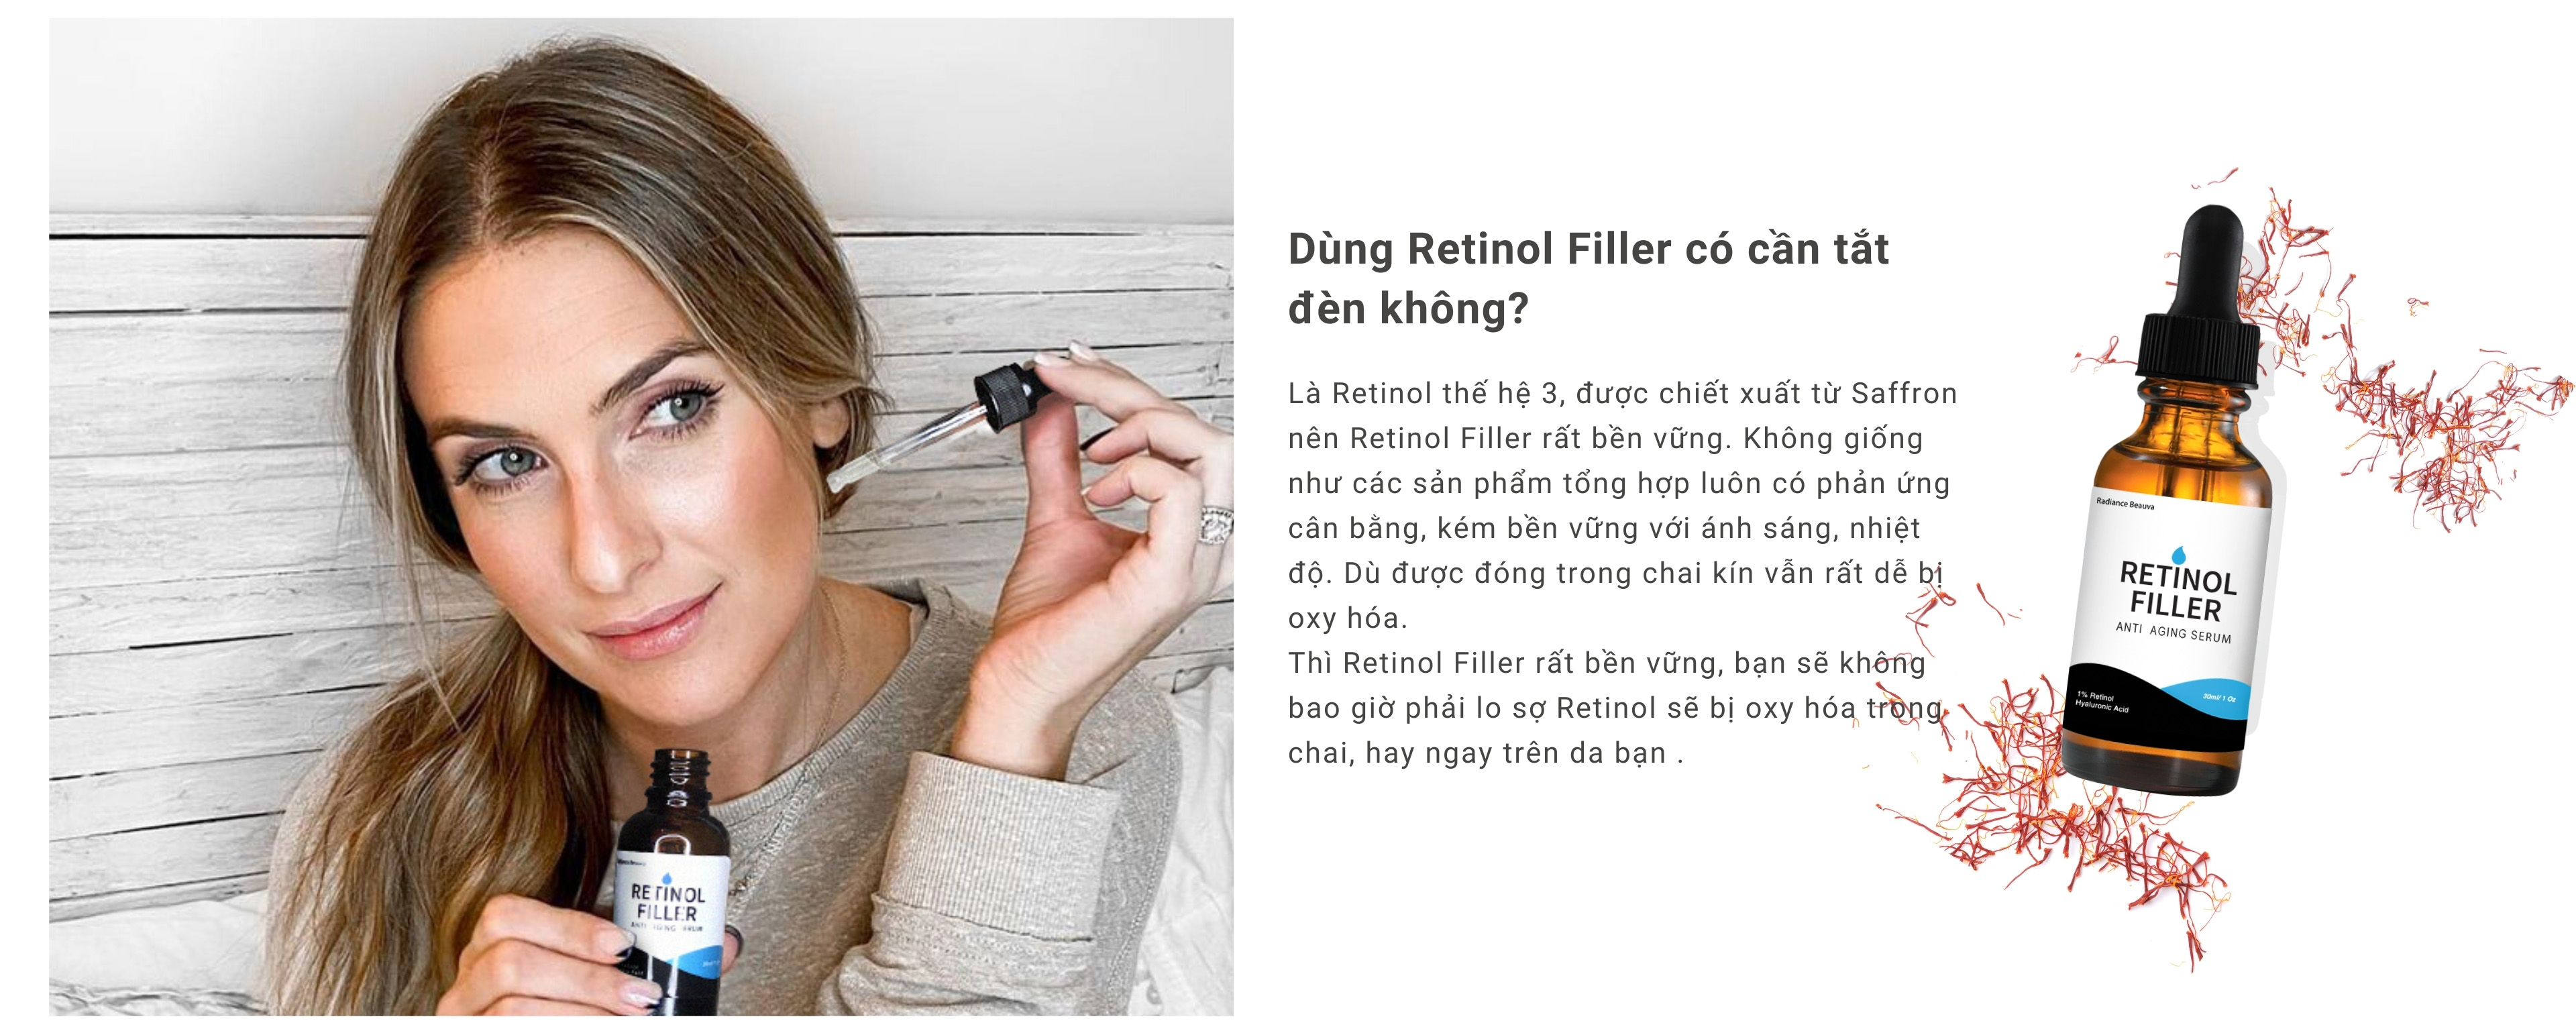 Sử dụng retinol filler không cần tắt đèn